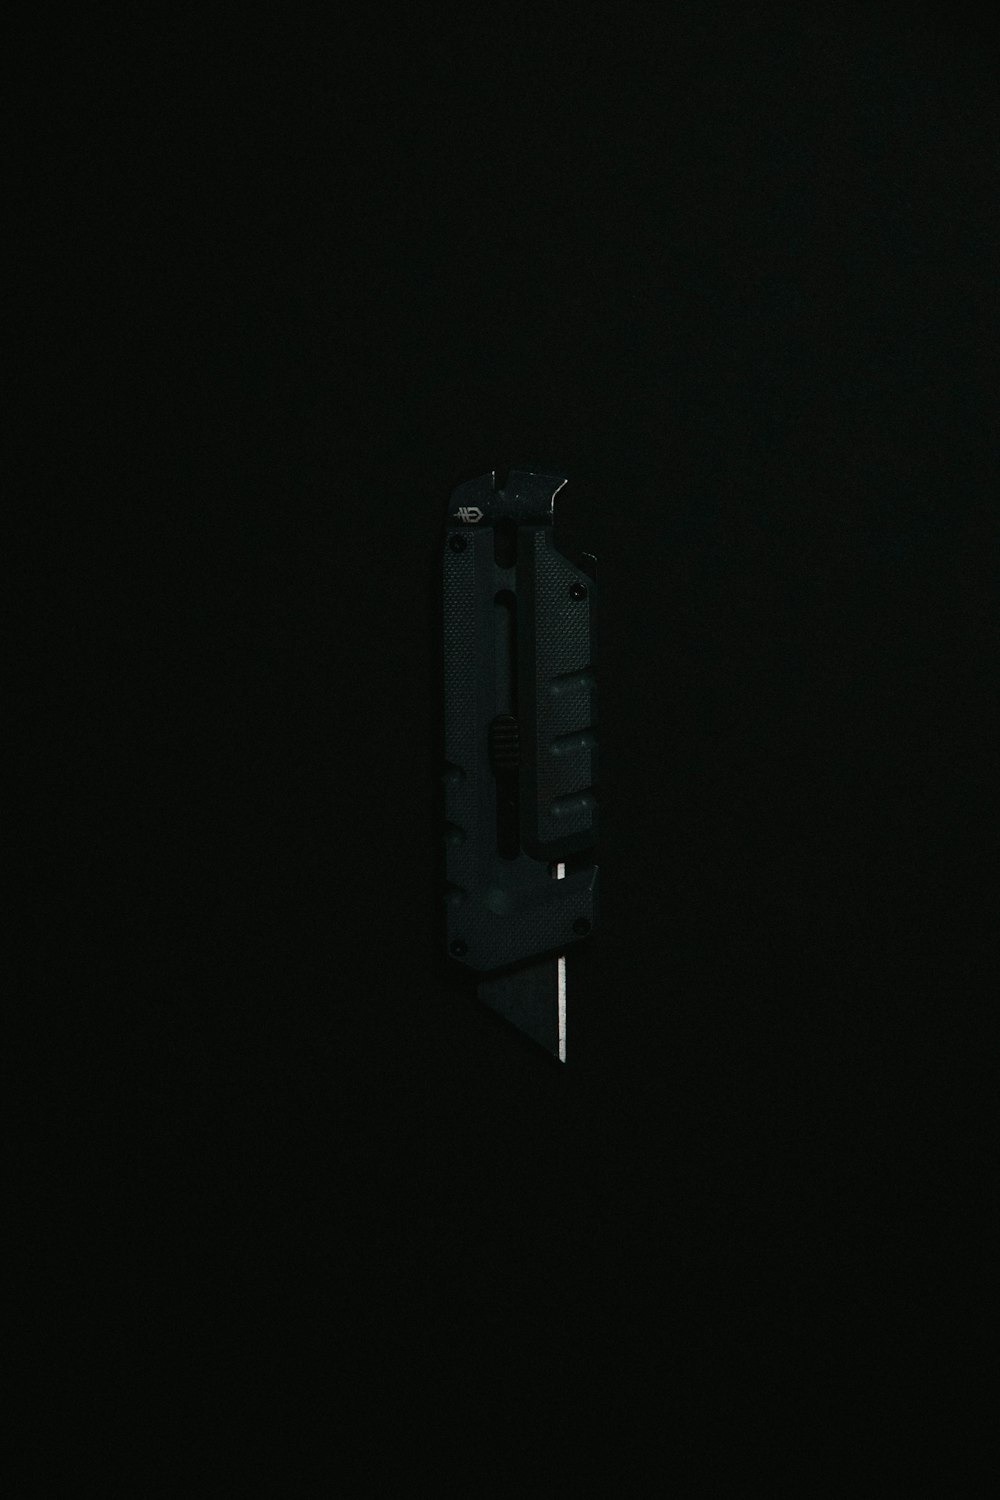 nave espacial preta e cinza